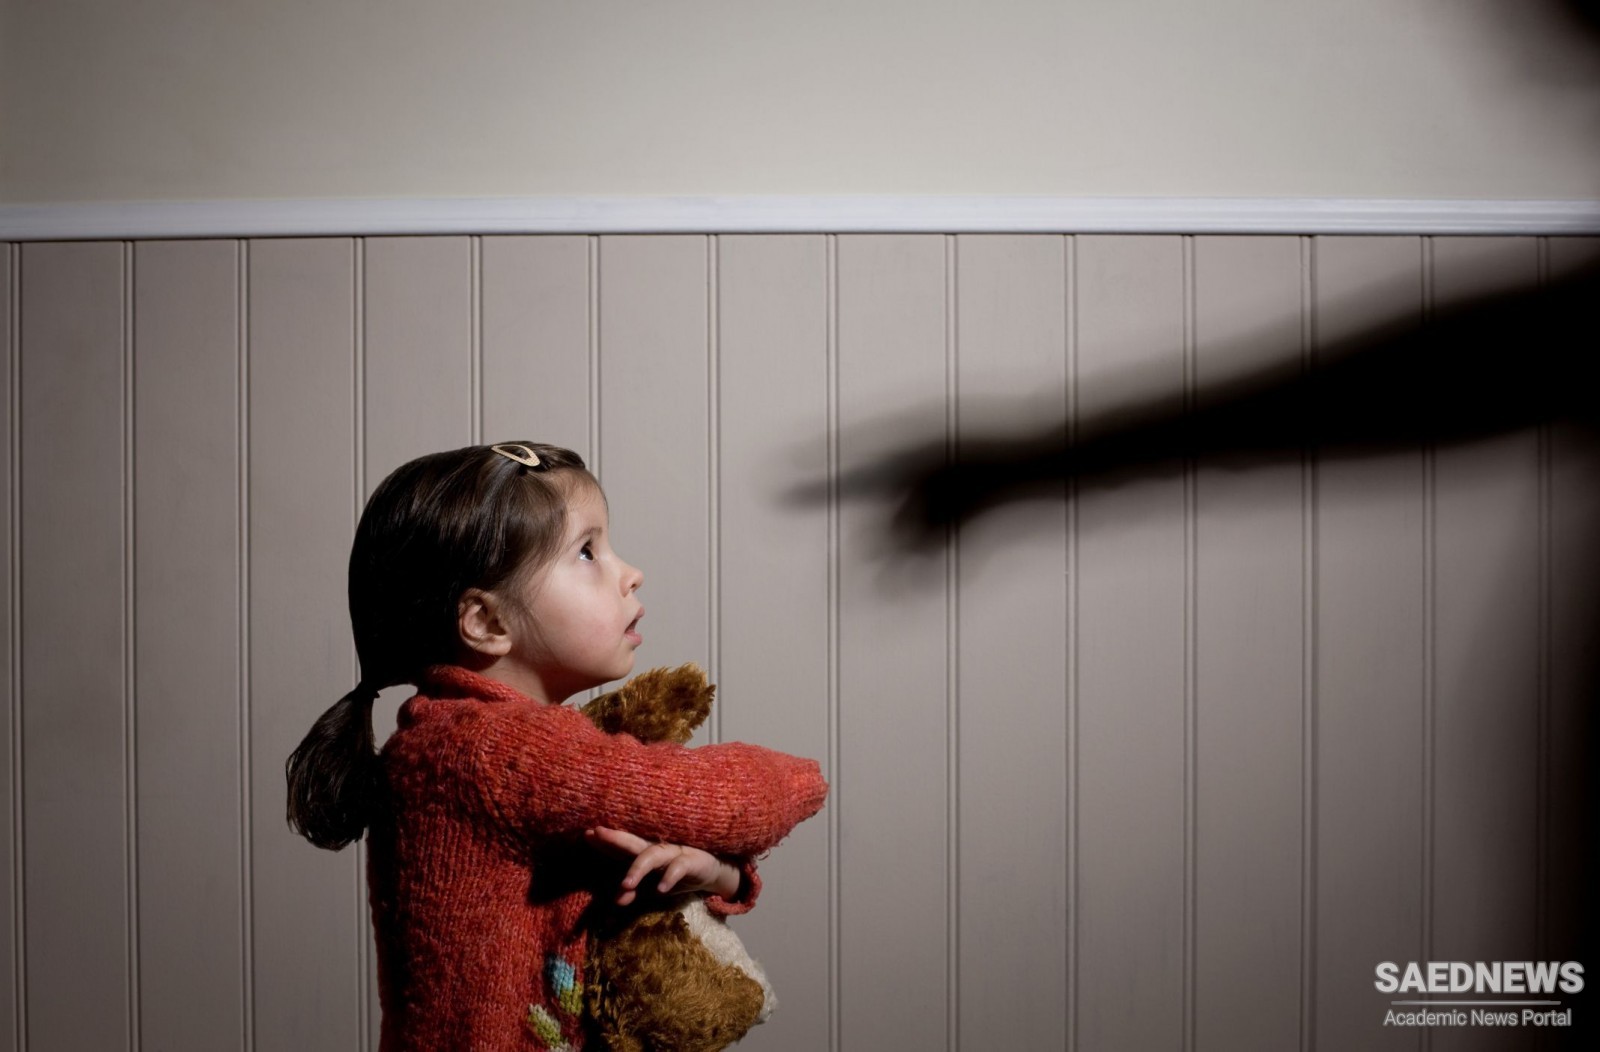 ब्रिटिश वैज्ञानिक : बाल शोषण के आंकड़ो में वृद्धि दिखी सर्वव्यापी लॉकडाउन के बीच